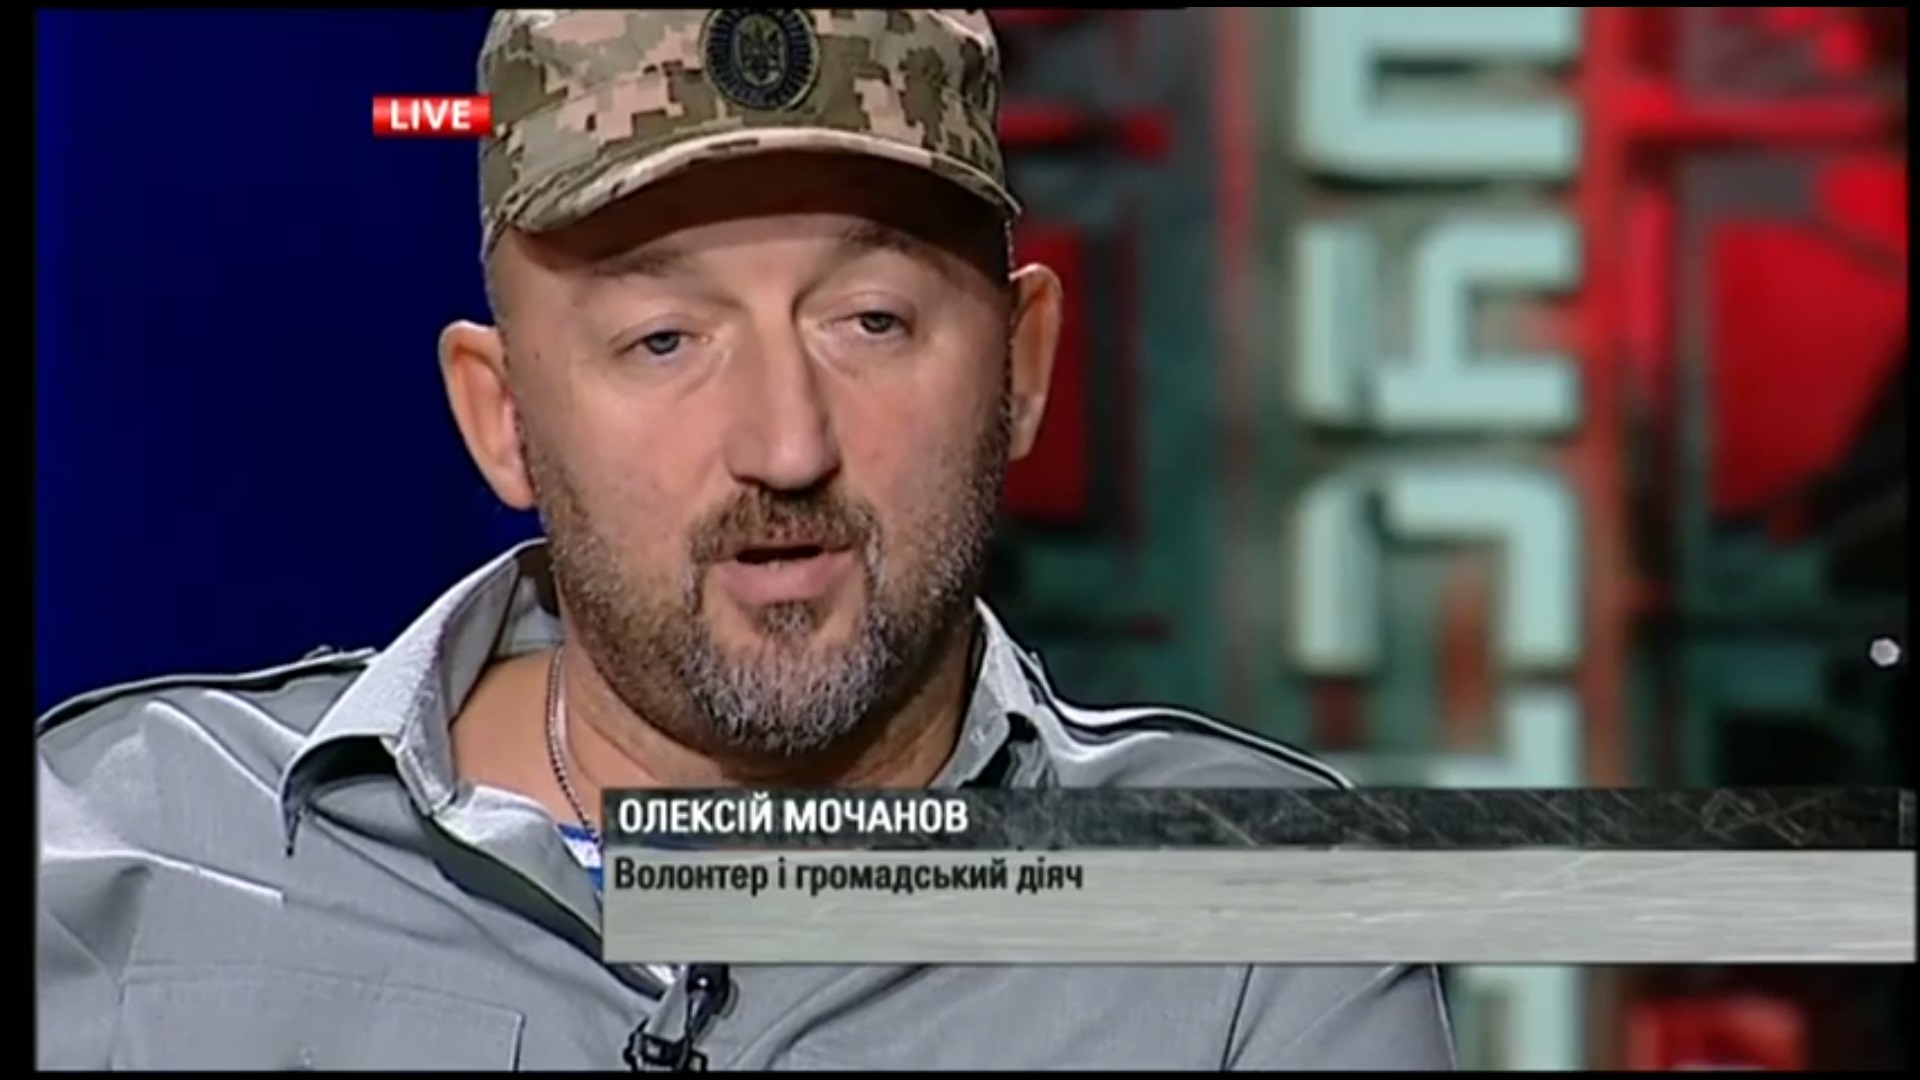 Гиви мог избежать смерти - велика вероятность инсценировки убийства: волонтер Мочанов рассказал, что именно задумали боевики